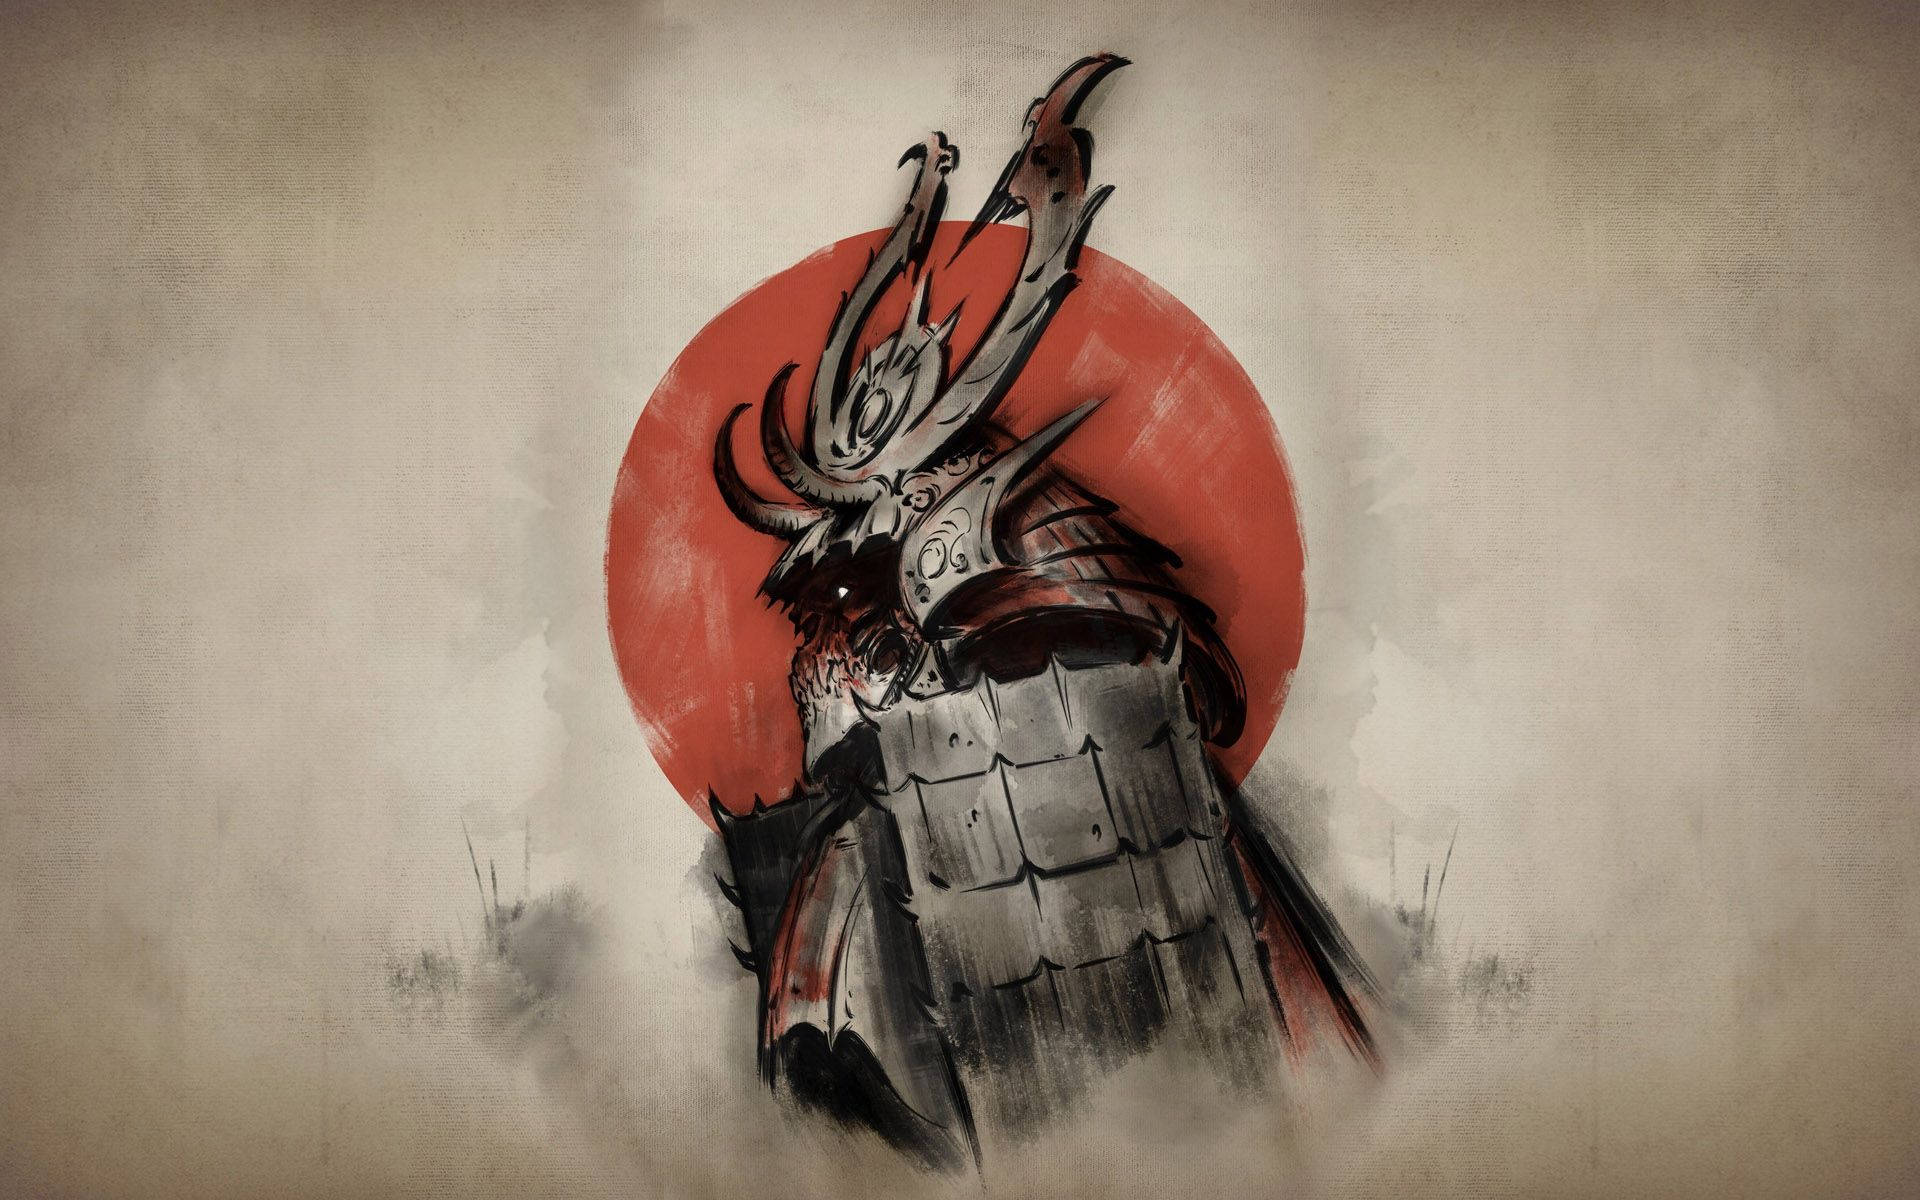 Dieseslebhafte Gemälde Zeigt Eine Klassische Samurai-kampfszene. Wallpaper